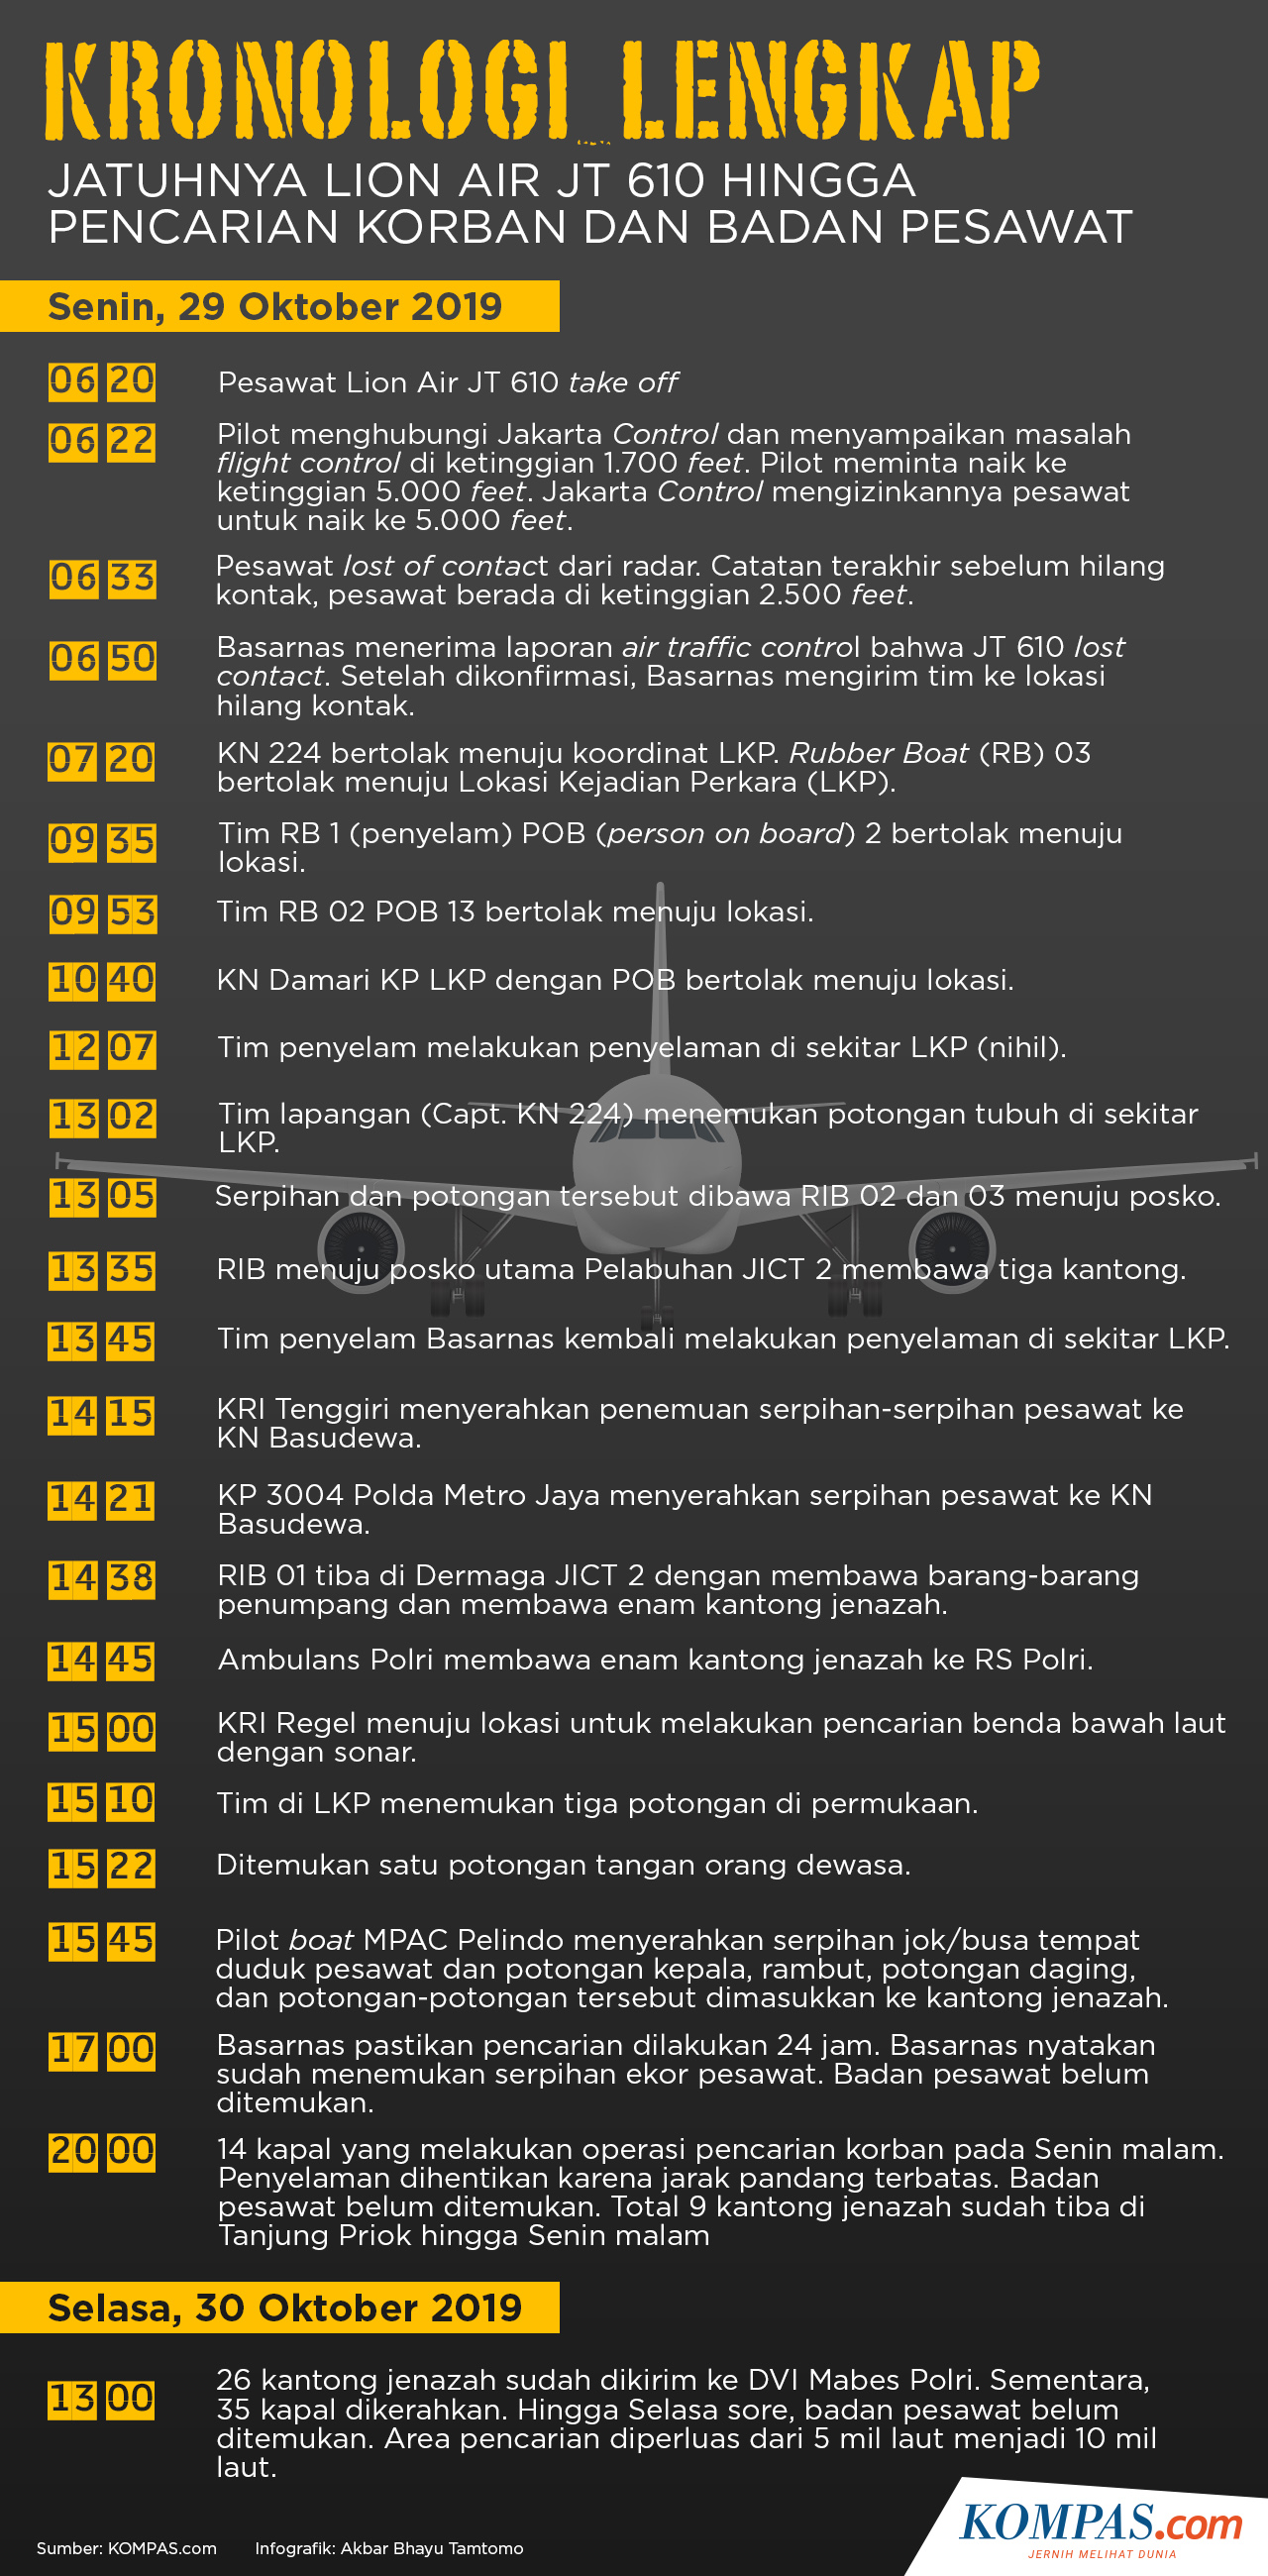 Infografik Kronologi Lengkap jatuhnya pesawat JT 610 hingga pencarian korban dan badan pesawat KOMPAS Akbar Bhayu Tamtomo